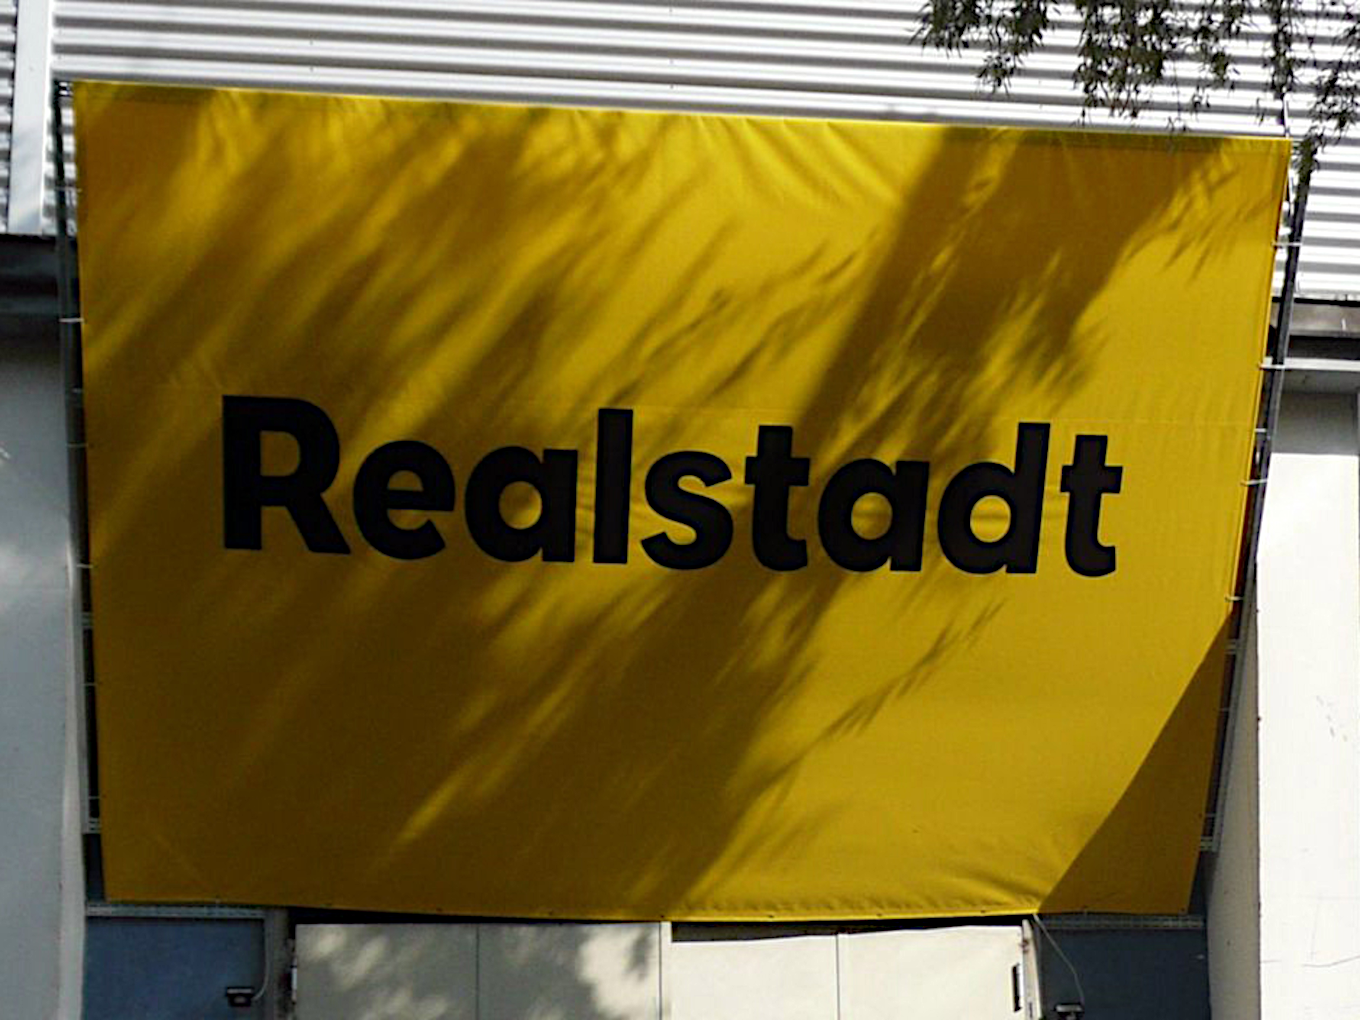 Bild zur Ausstellung "Realstadt - Wünsche als Wirklichkeit" 2010 in Berlin